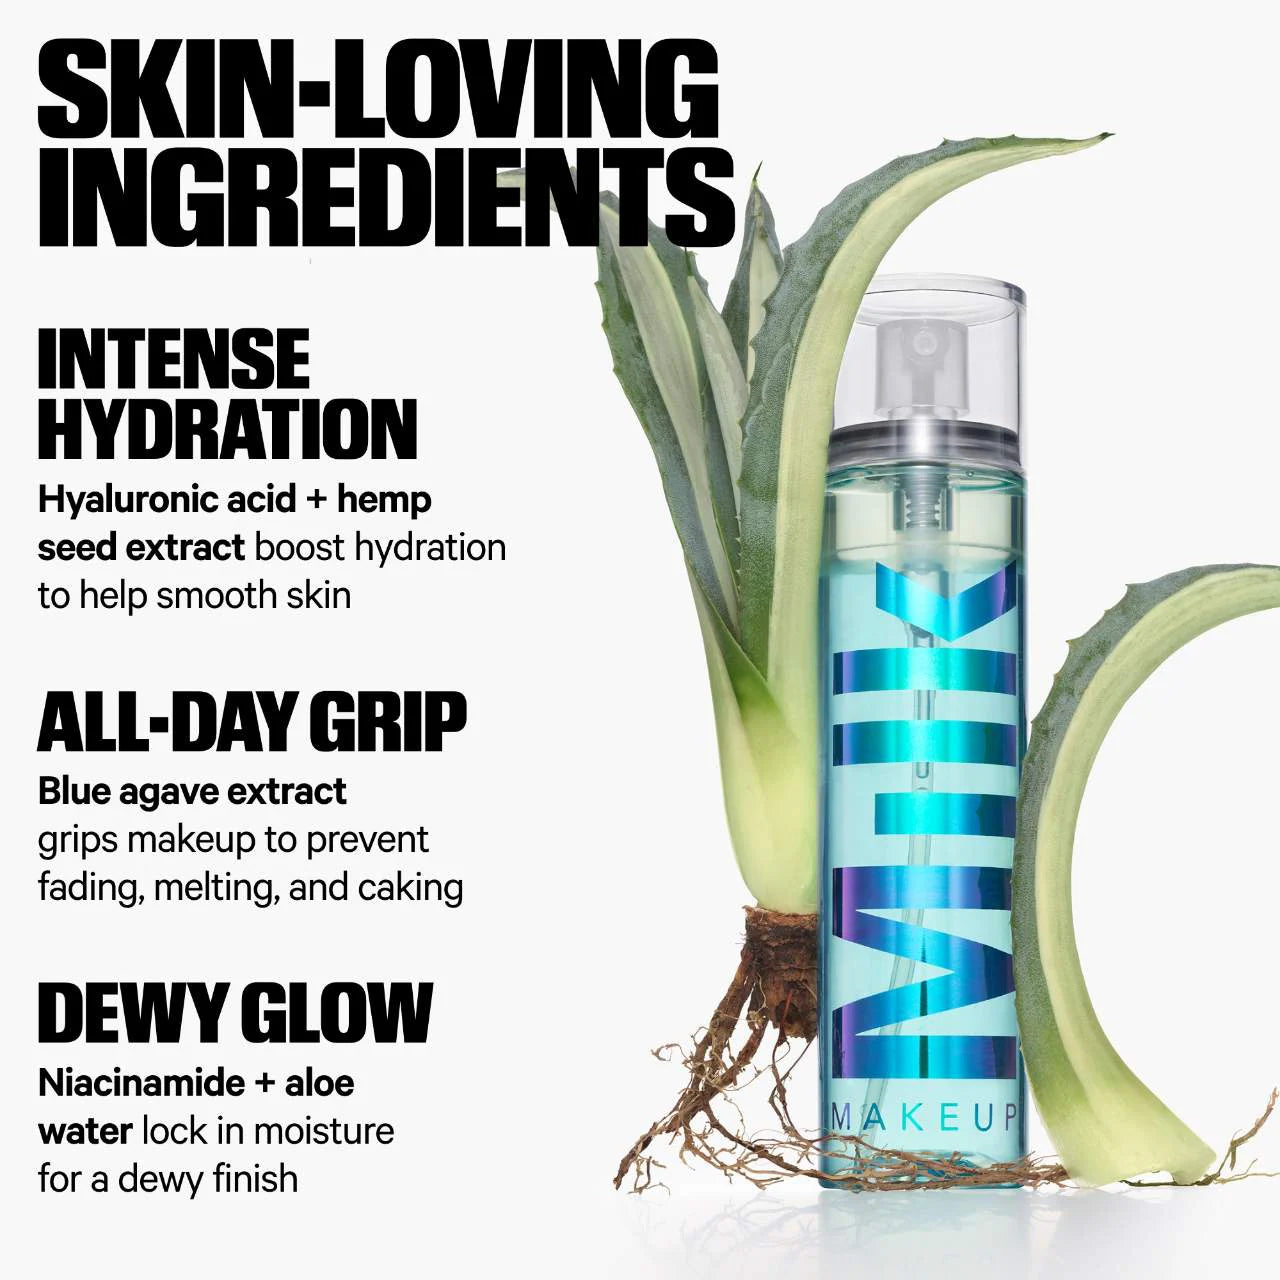 Hydro Grip Dewy Long-Lasting Setting Spray